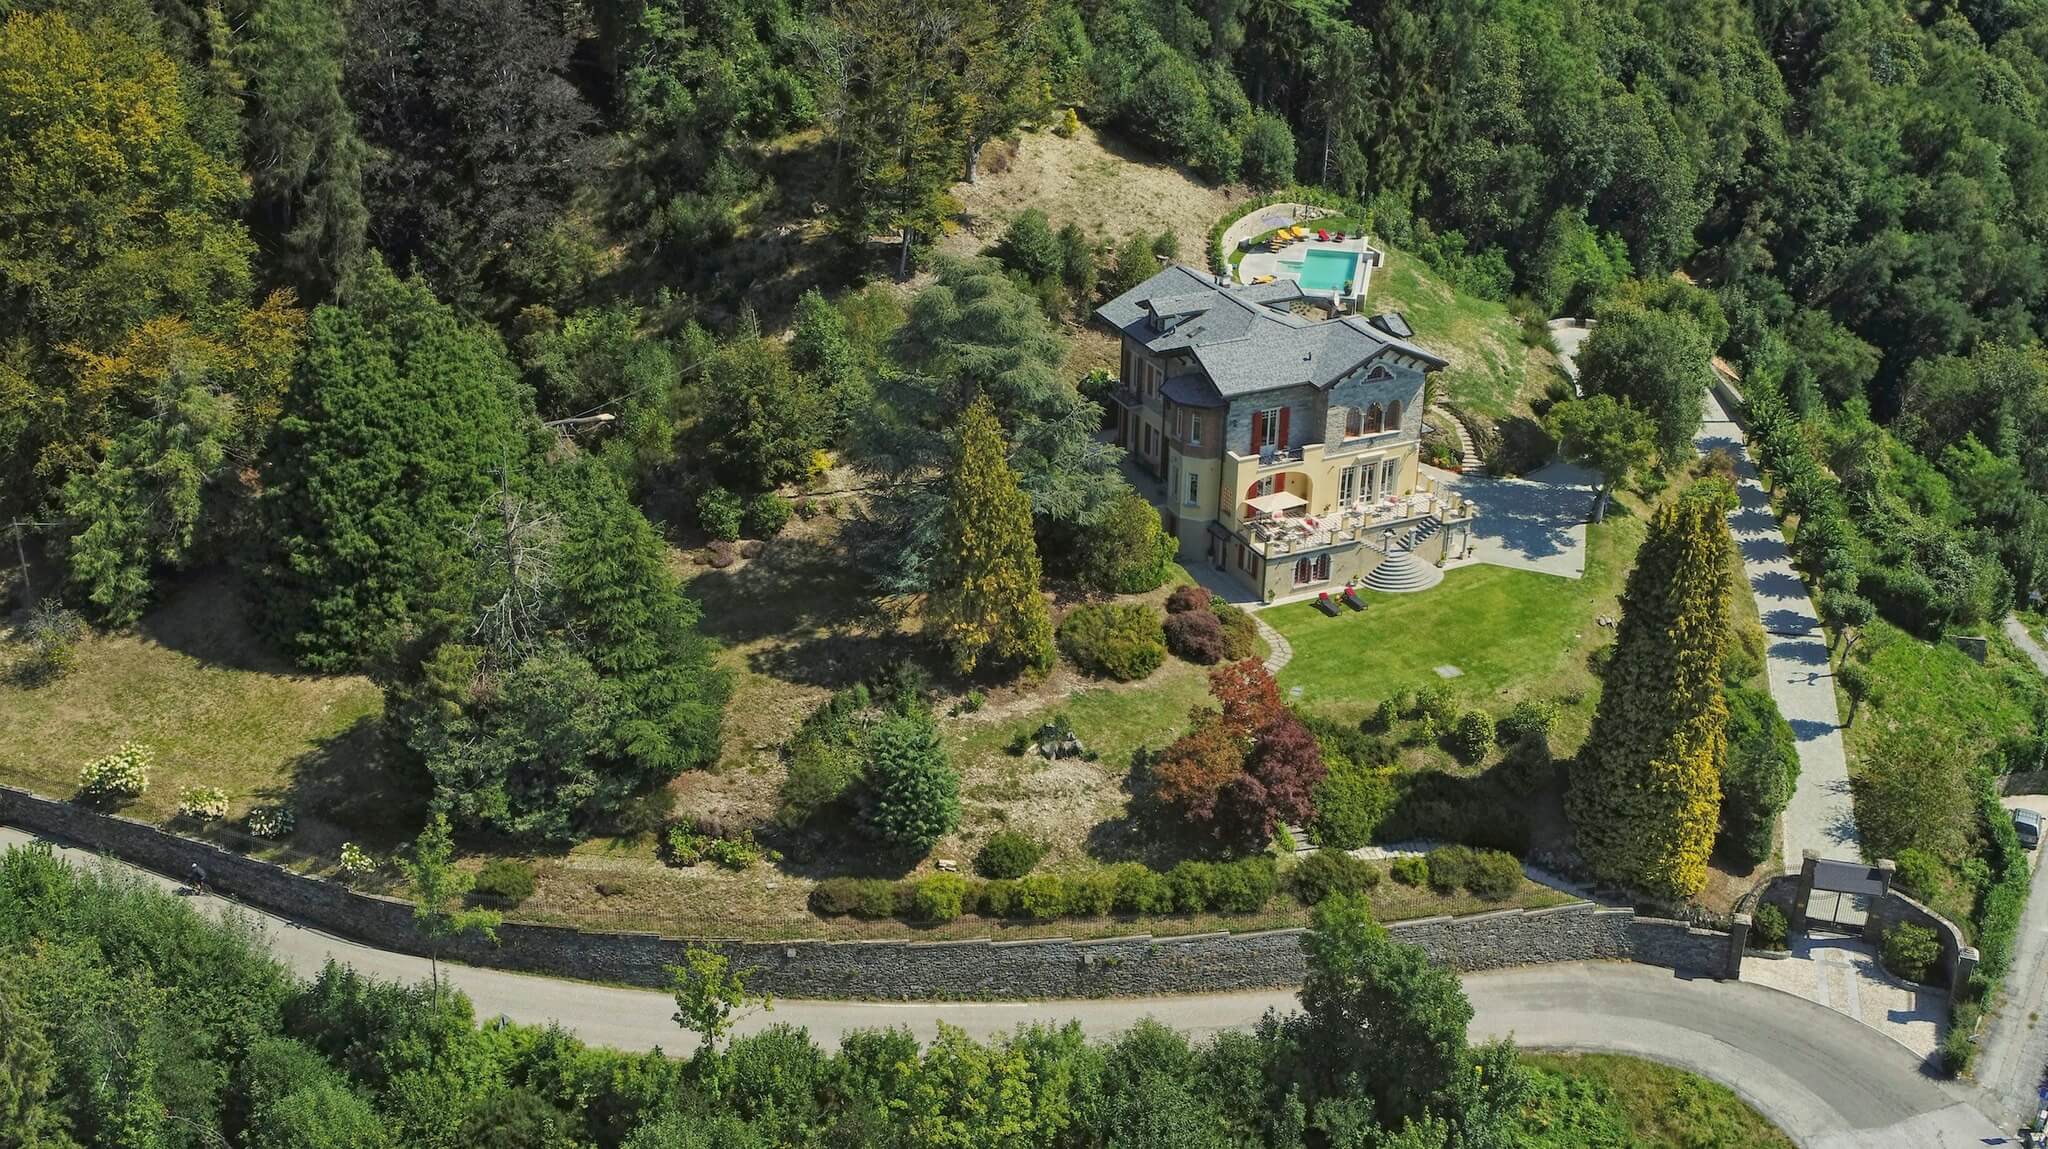 Villa Confalonieri aerial view